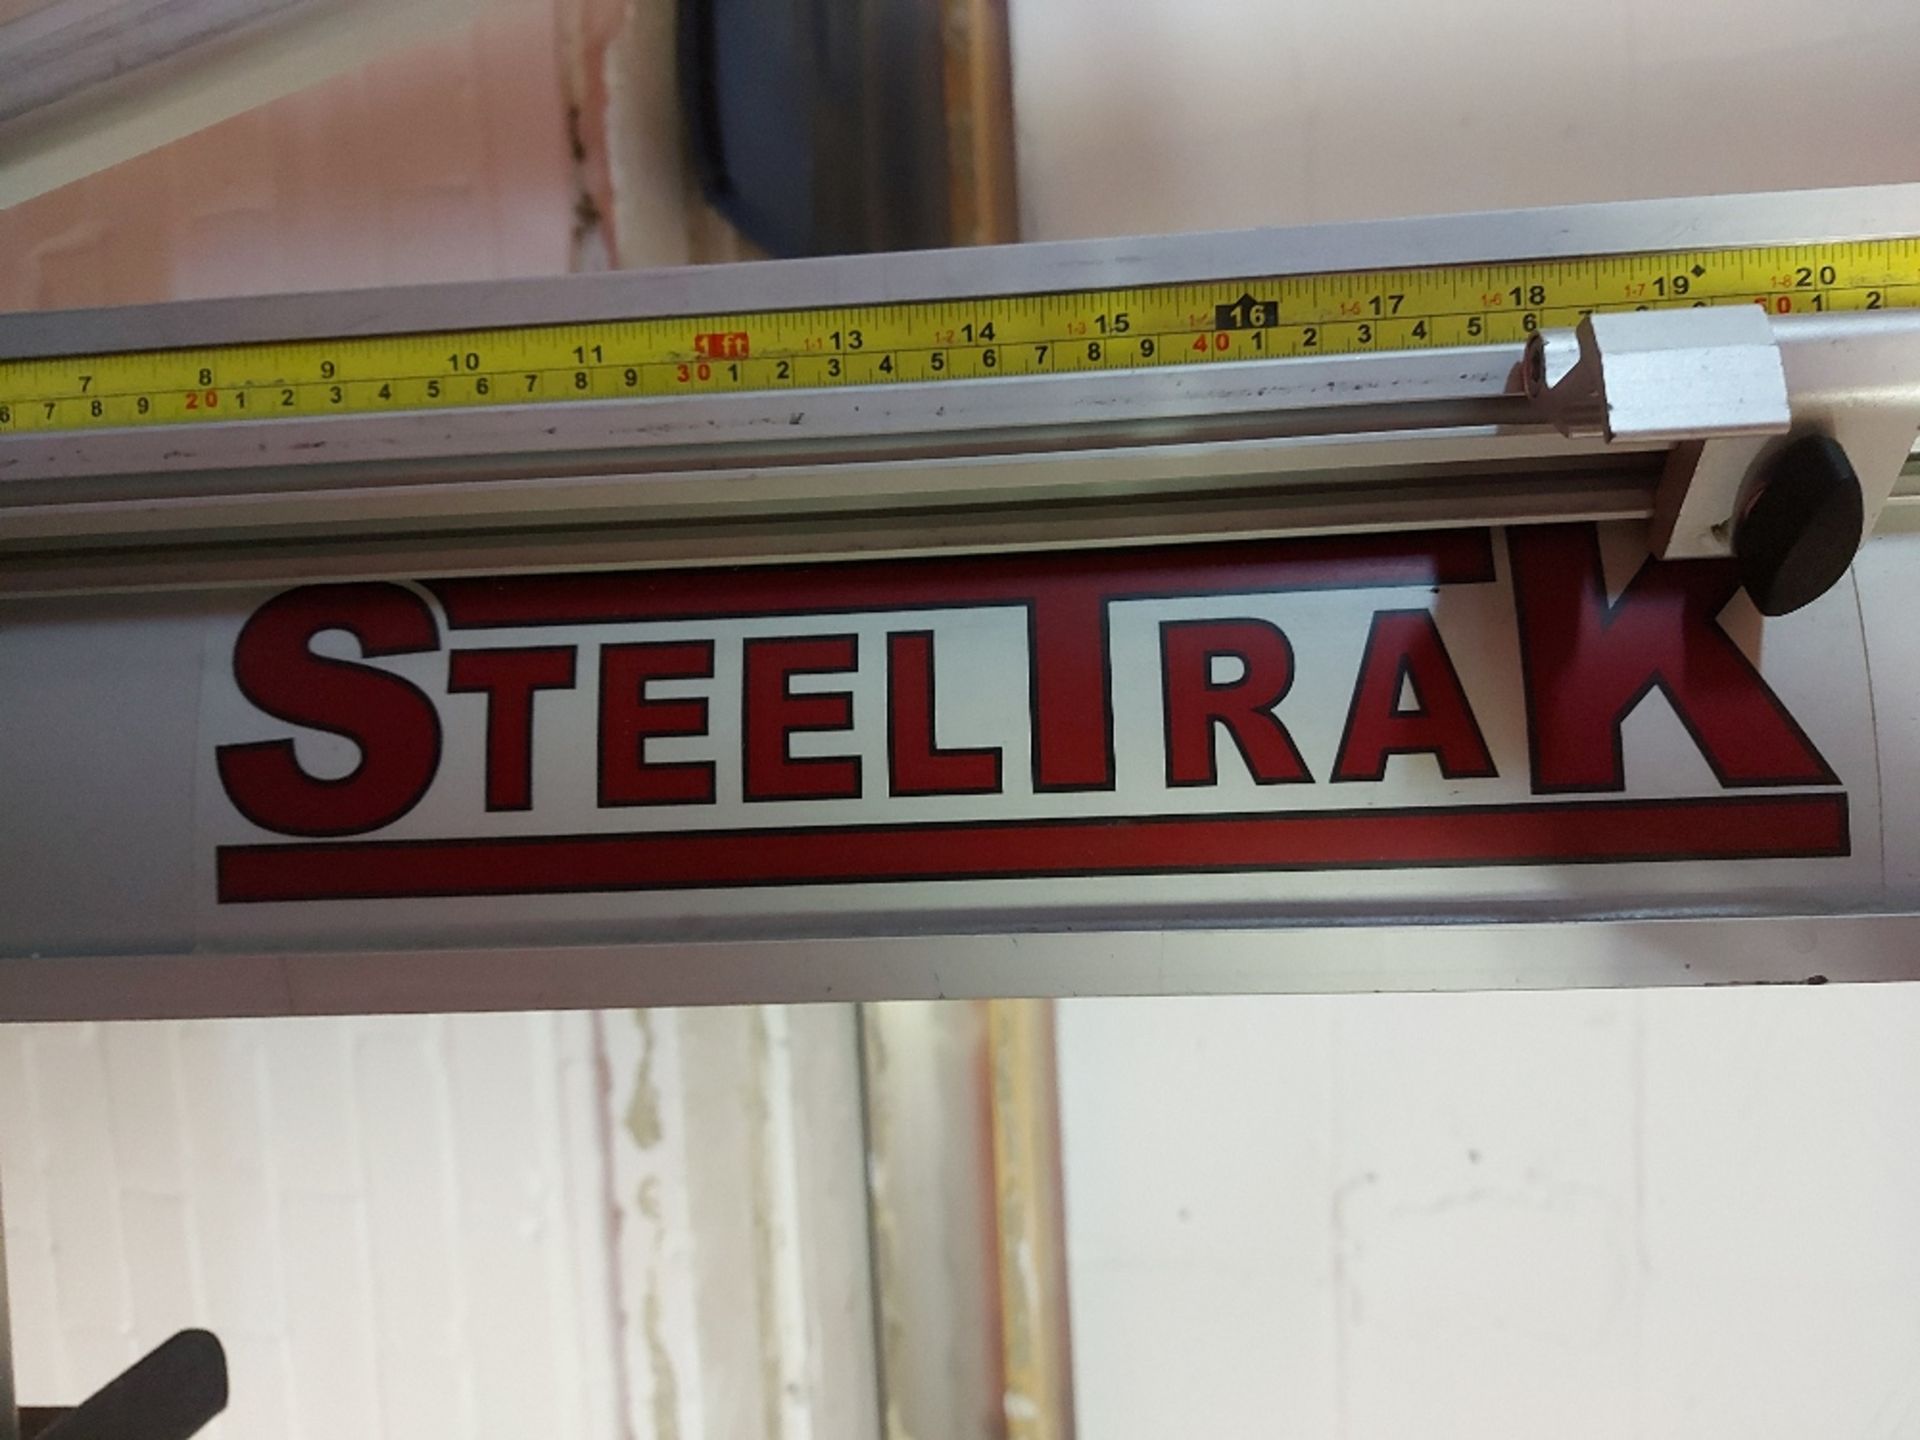 Keencut Steeltrak ST210 2100mm / 82" Vertical Cutter - Image 3 of 4